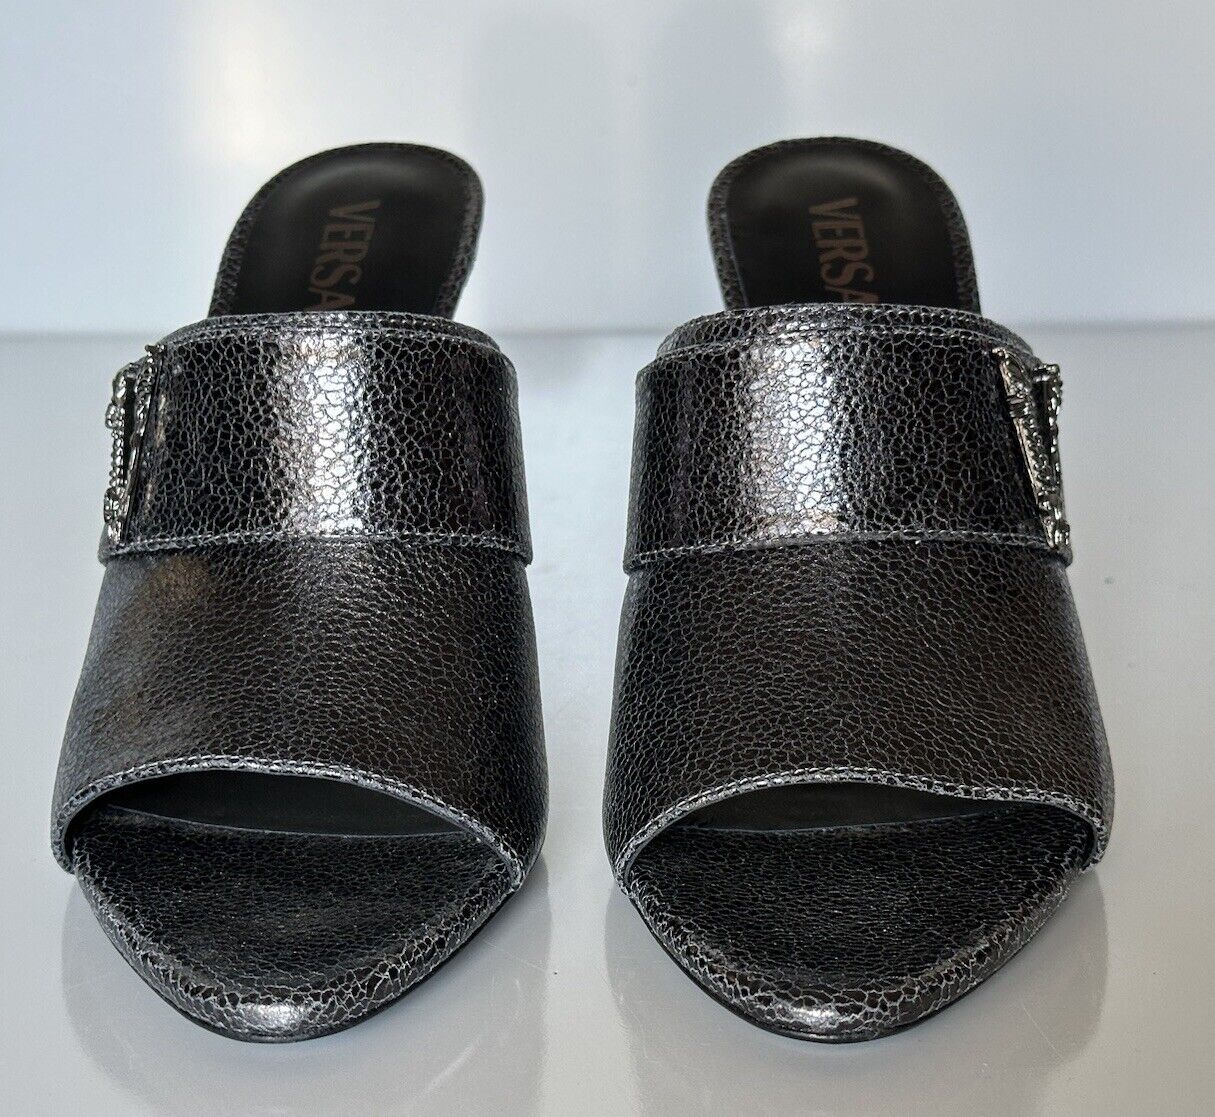 NIB $990 Versace Virtus Leather Black Sandals Shoes 11 US (41 Eu) Spain 1011901